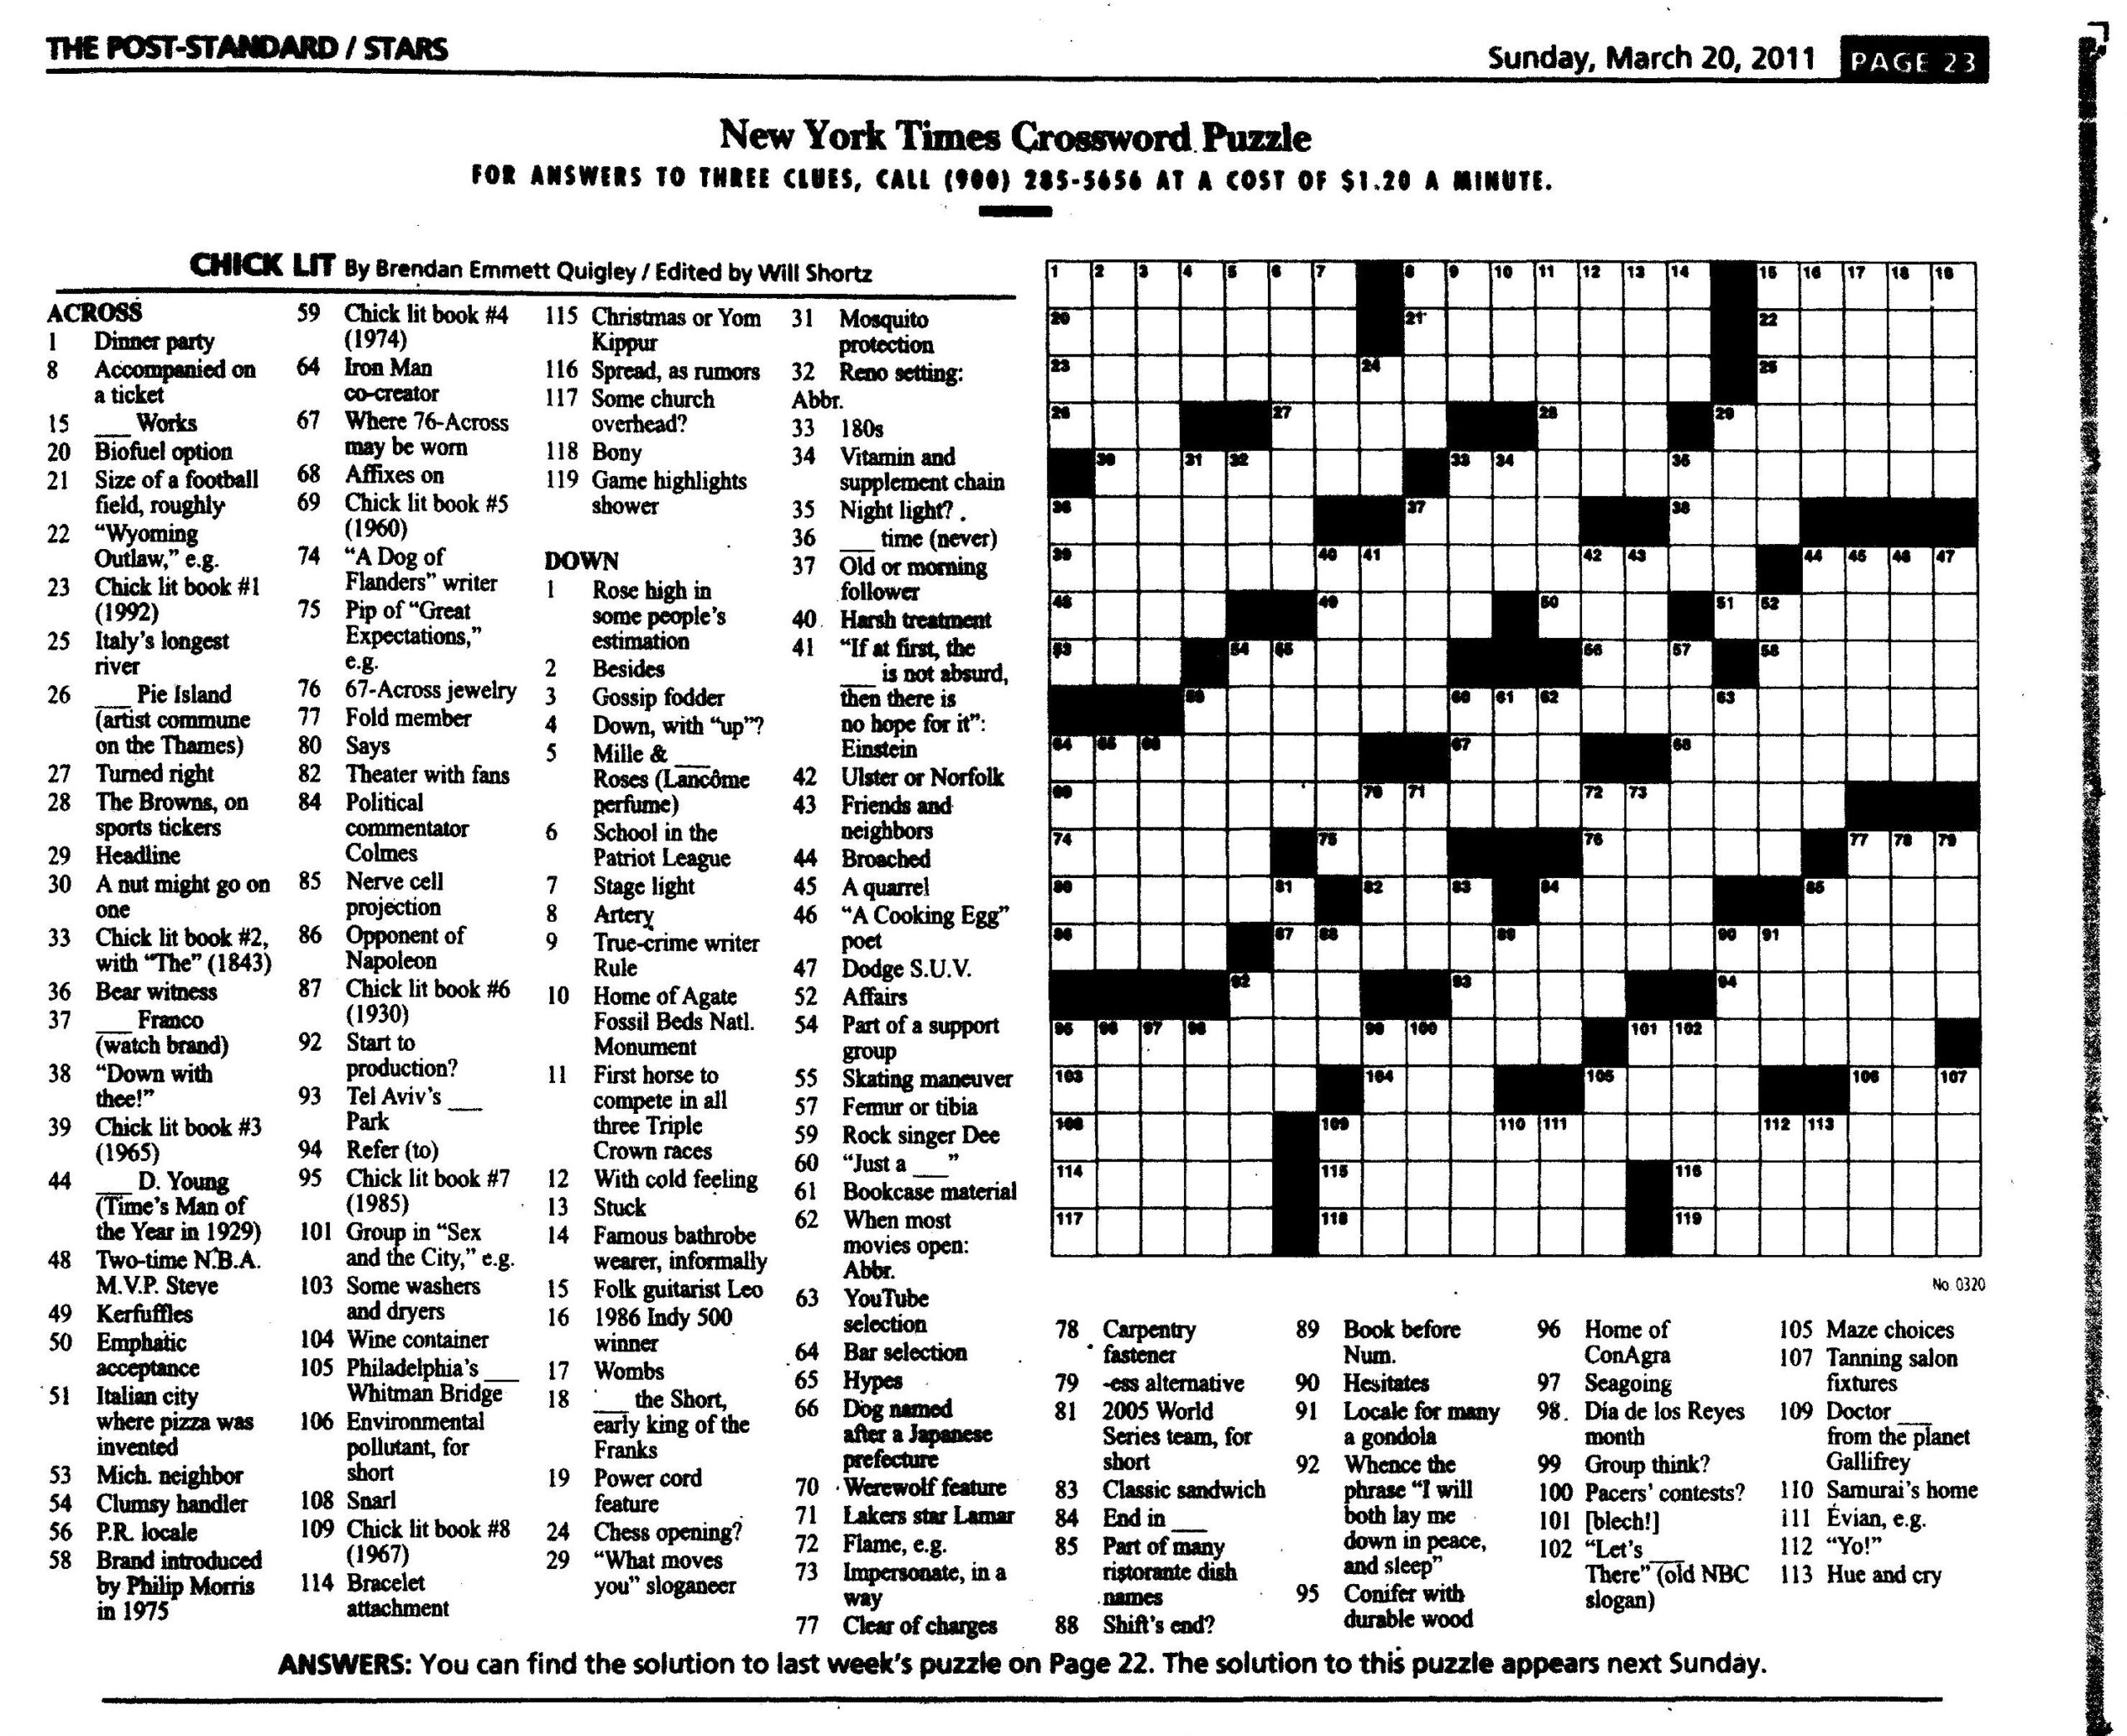 Free Nyt Sunday Crossword Puzzle